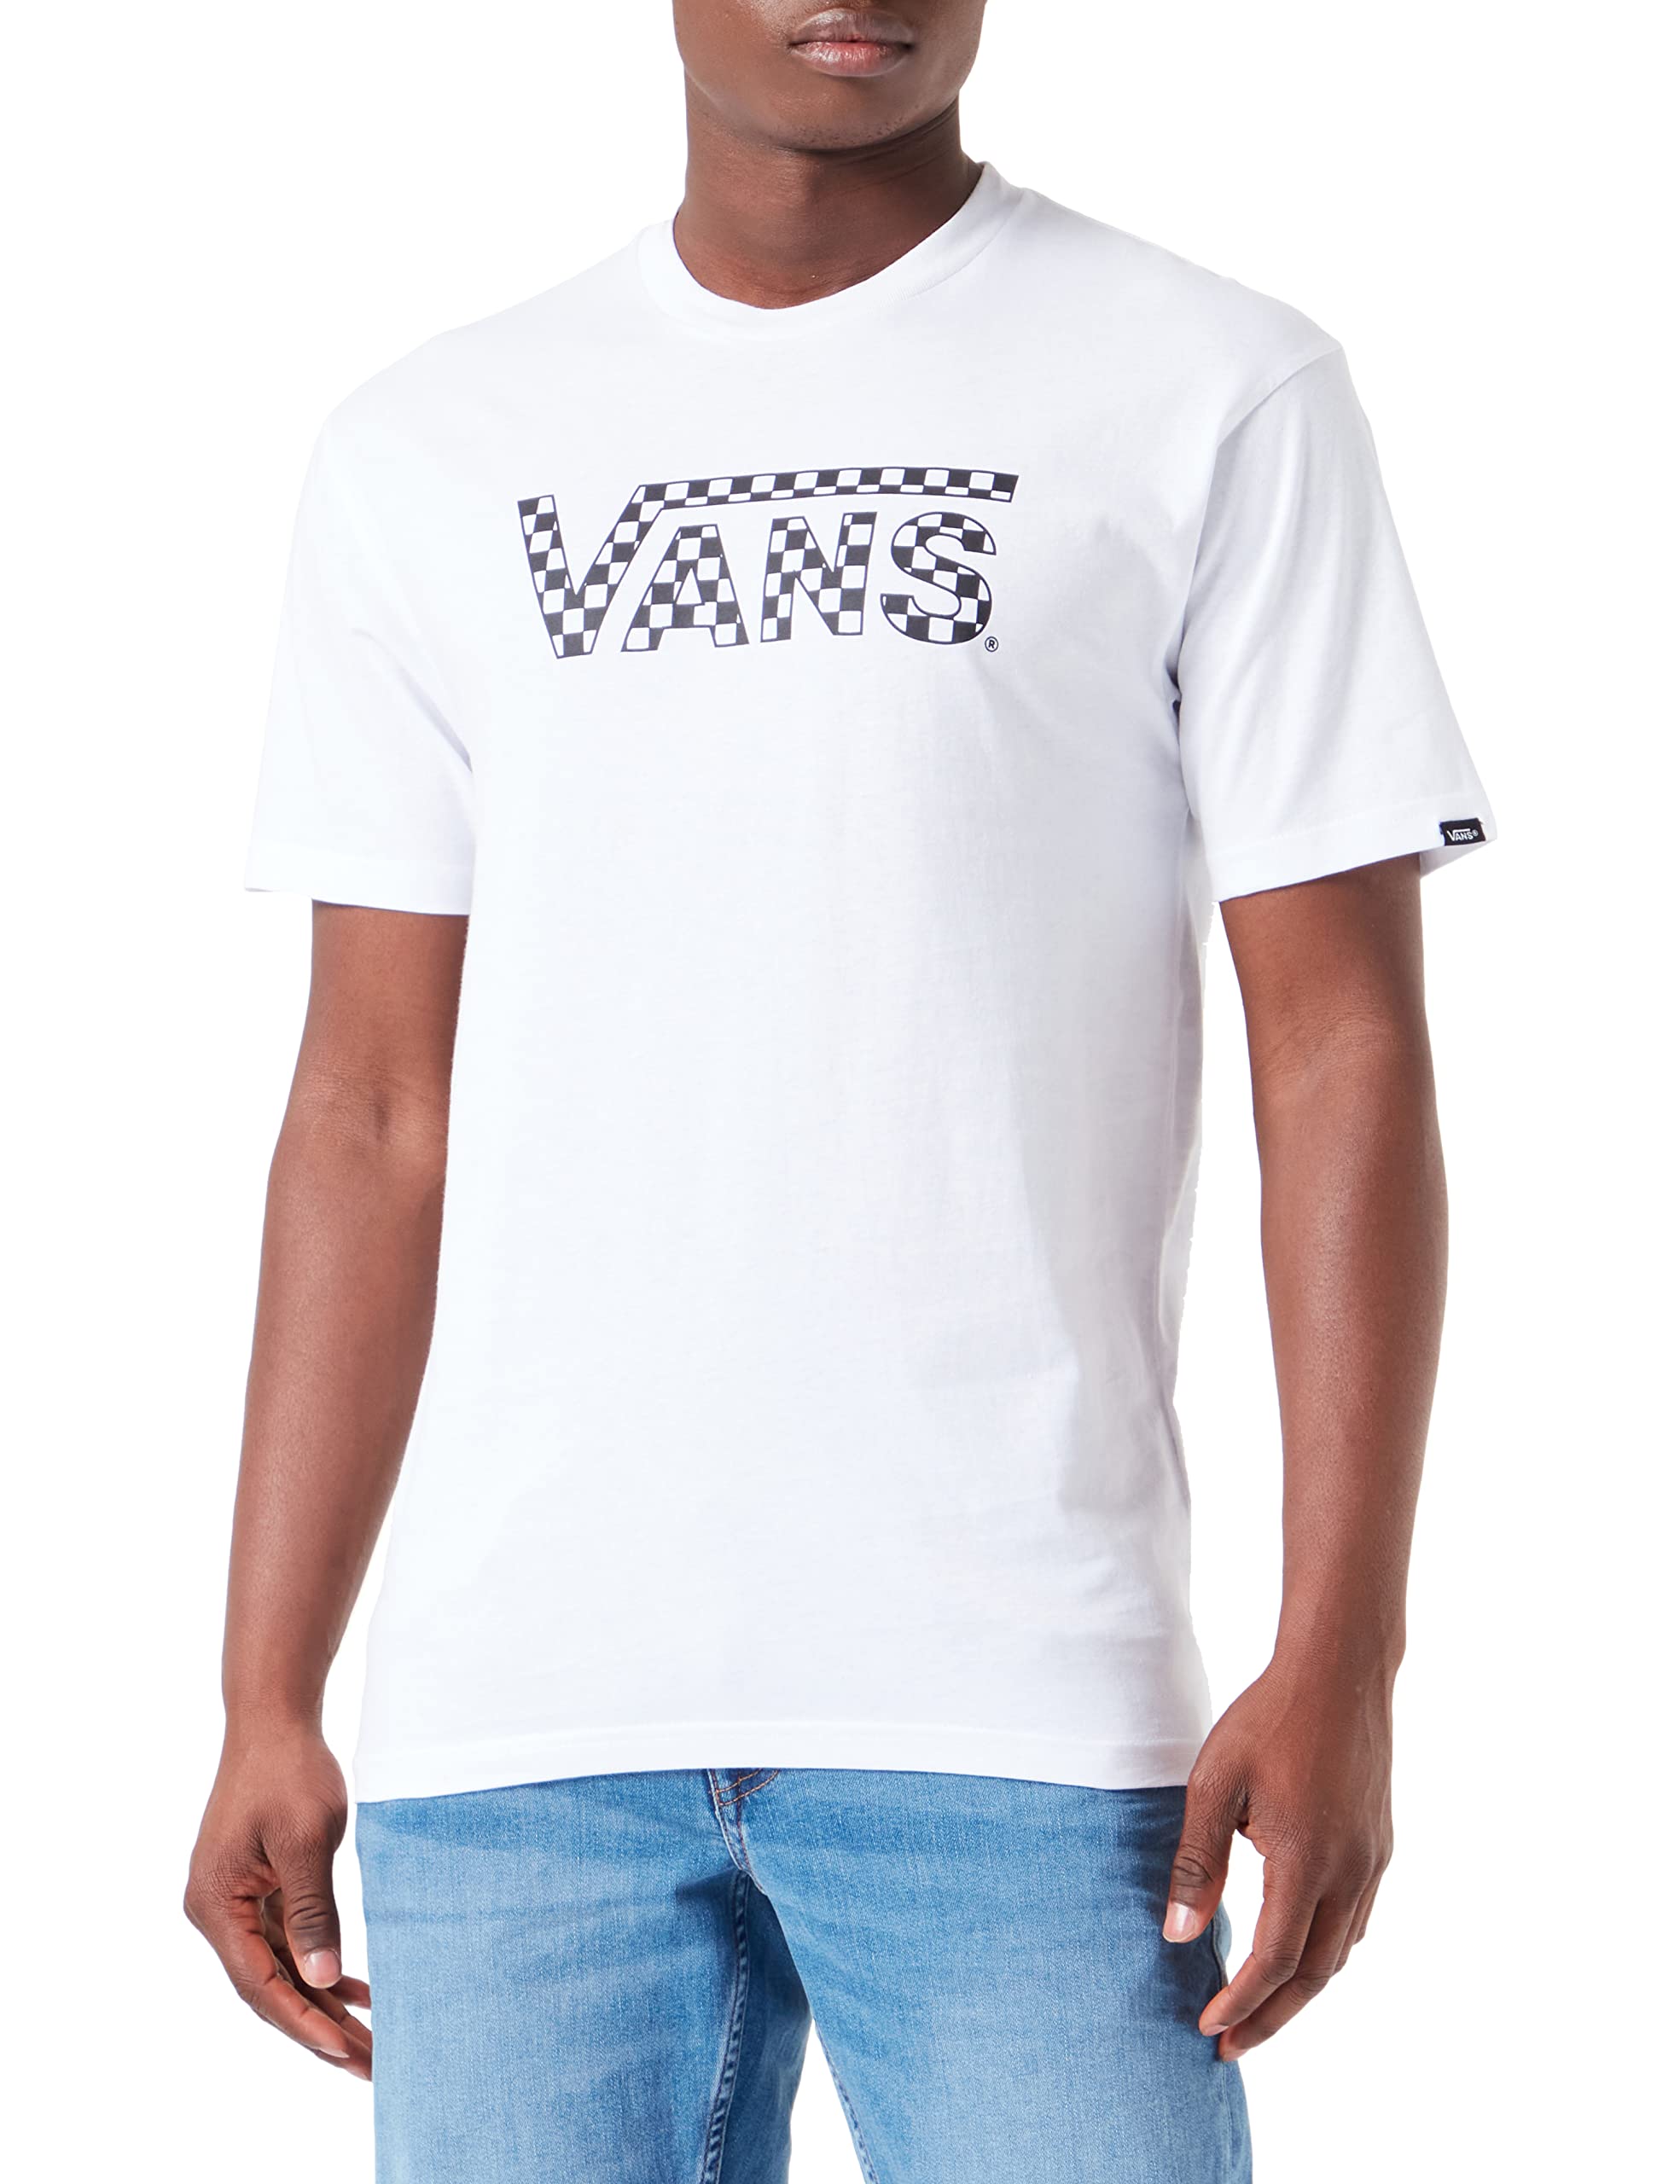 soldes Vans Carreaux T-Shirt Homme y2OIirvhR meilleure vente